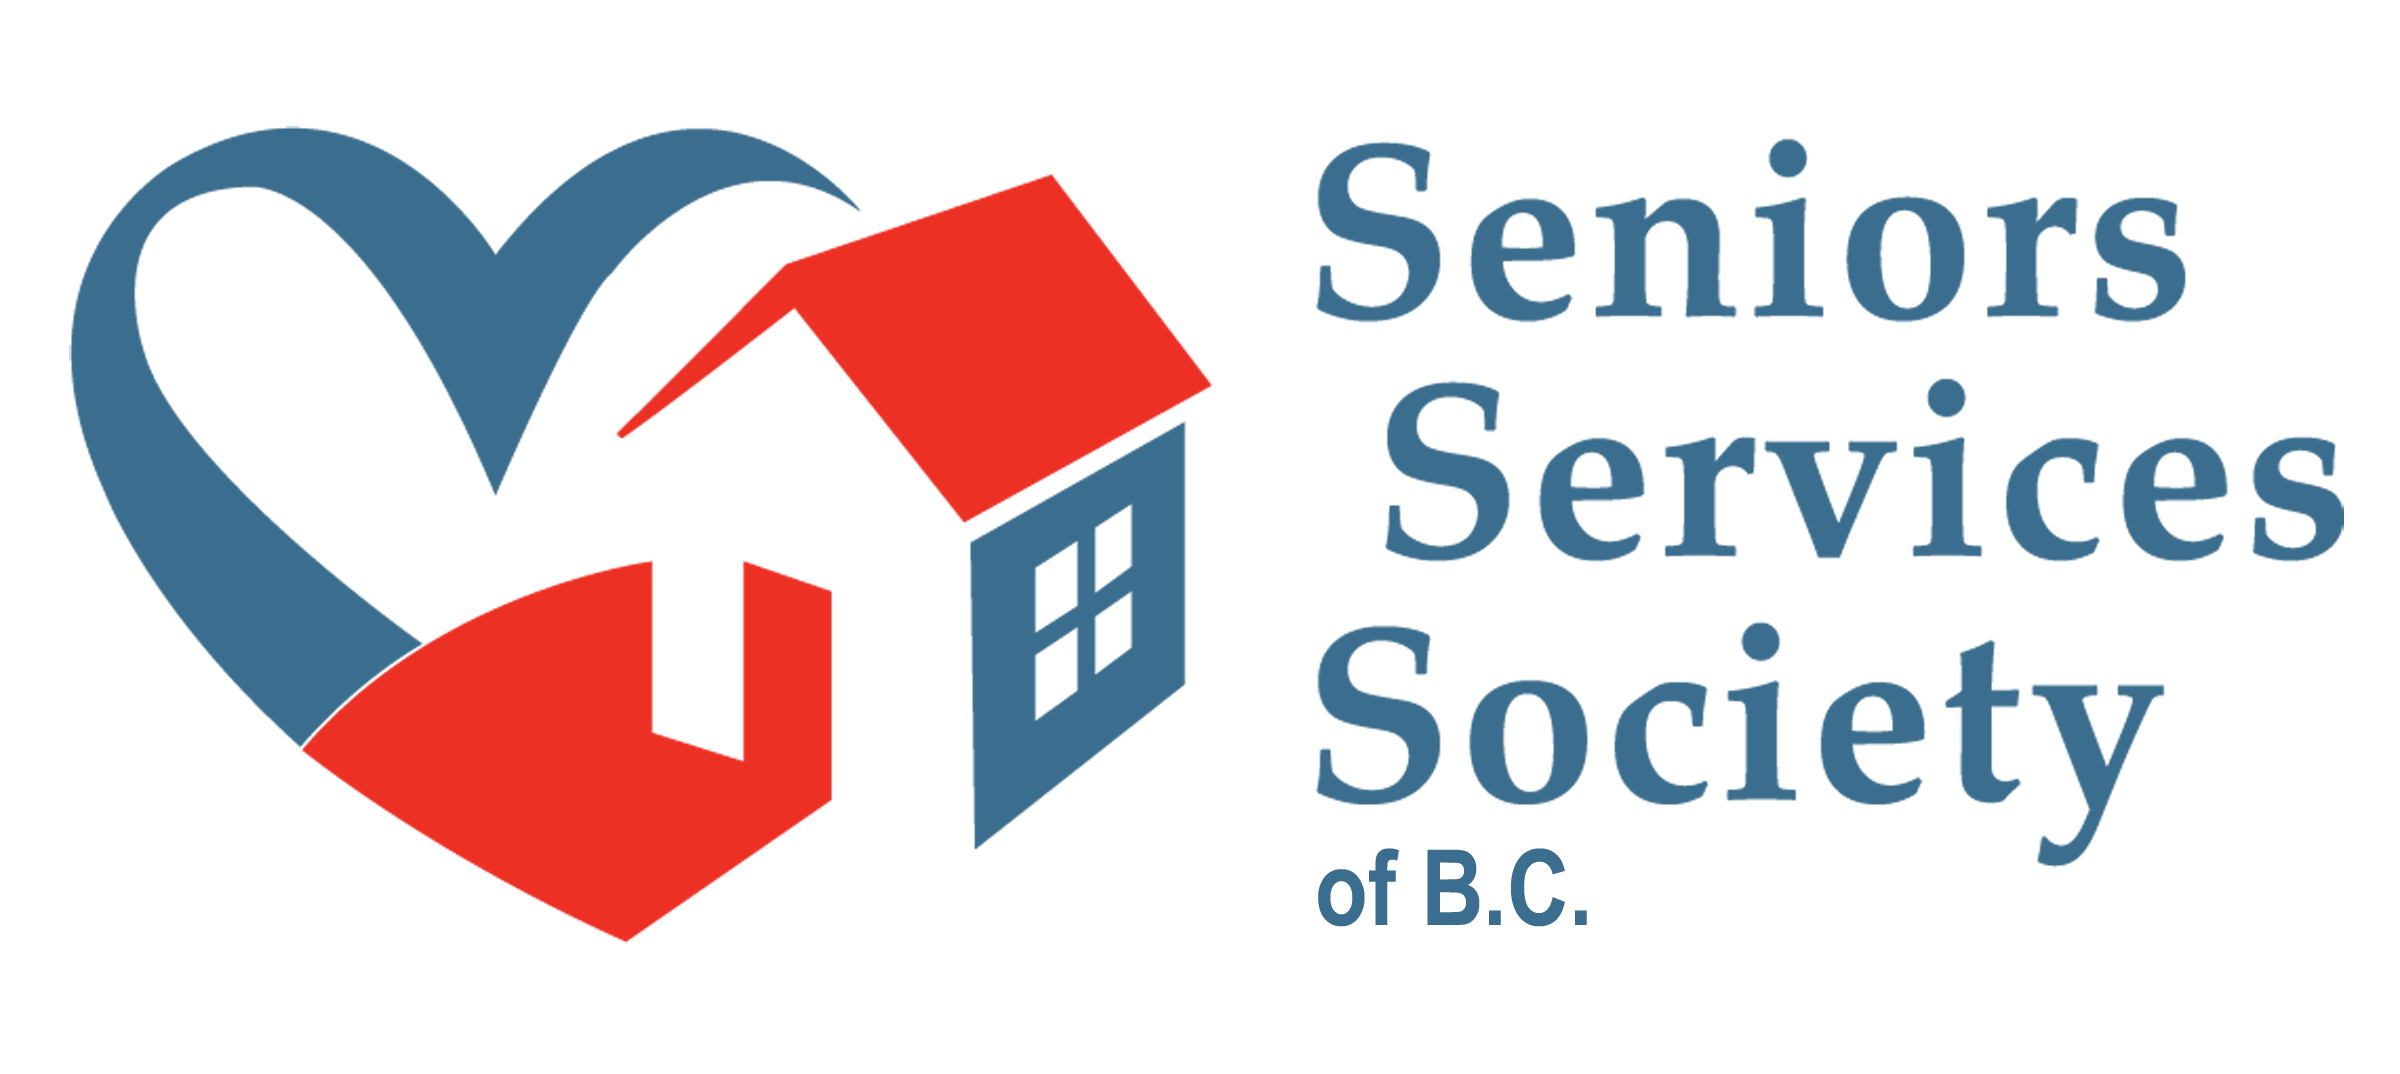 Seniors Services Society